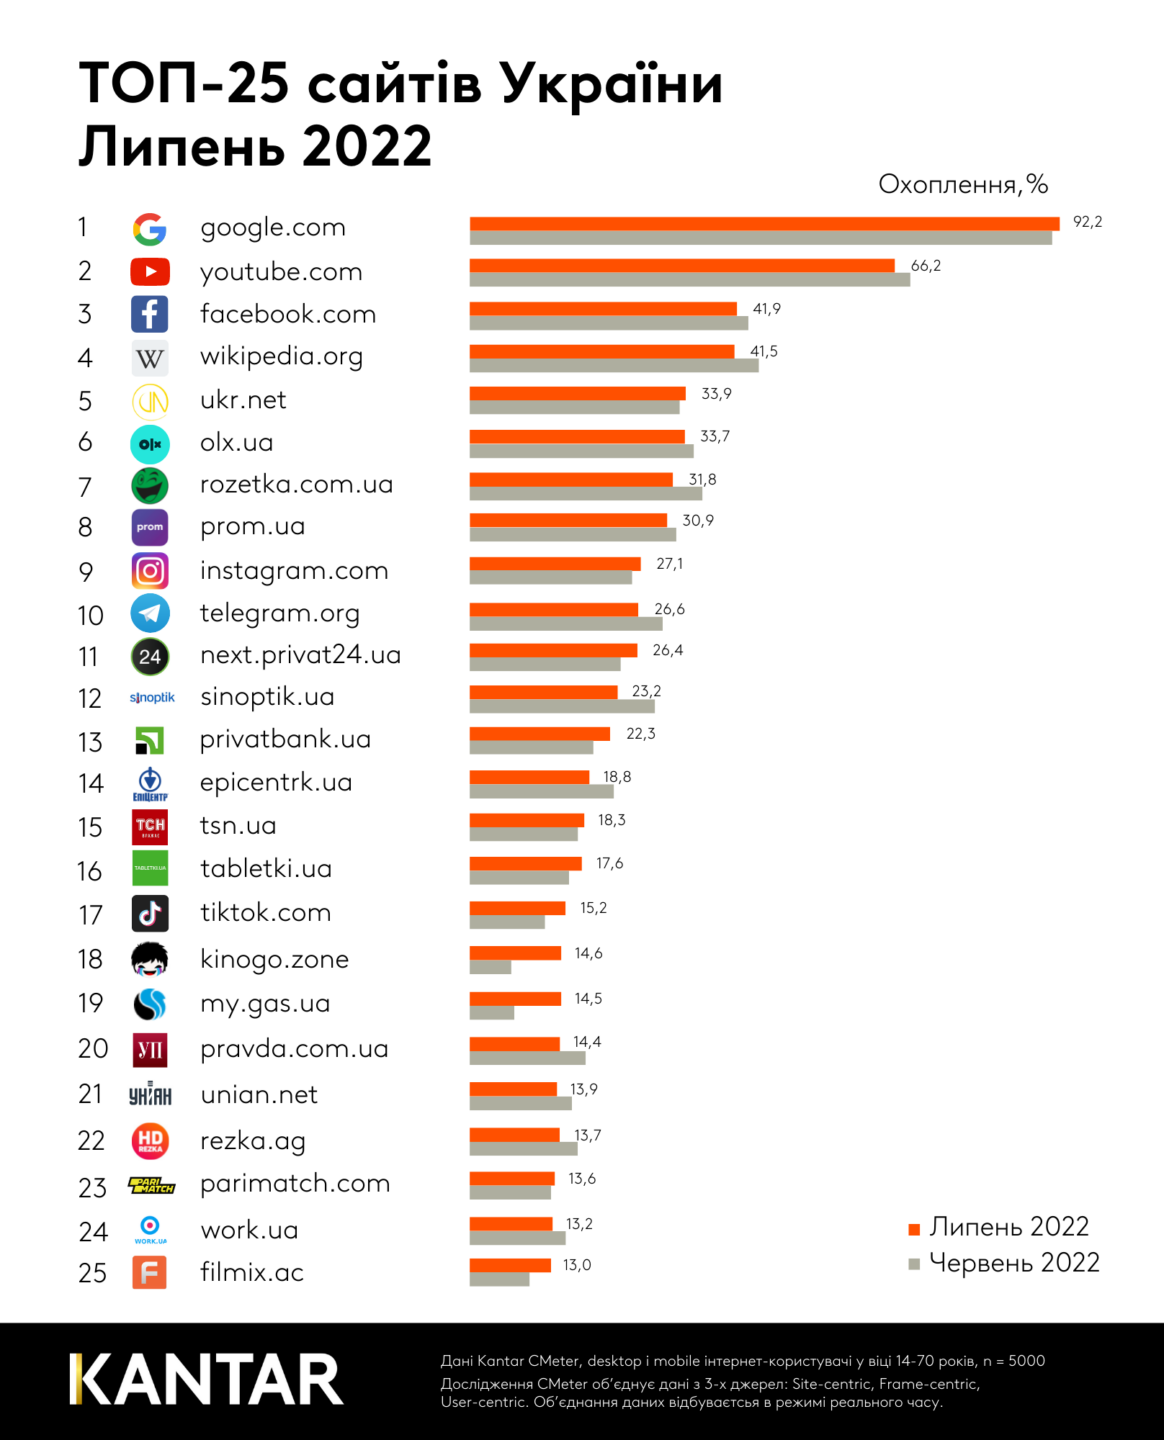 ТОП 25 сайтів в Україні за липень 2022: що цікавило українців минулого місяця